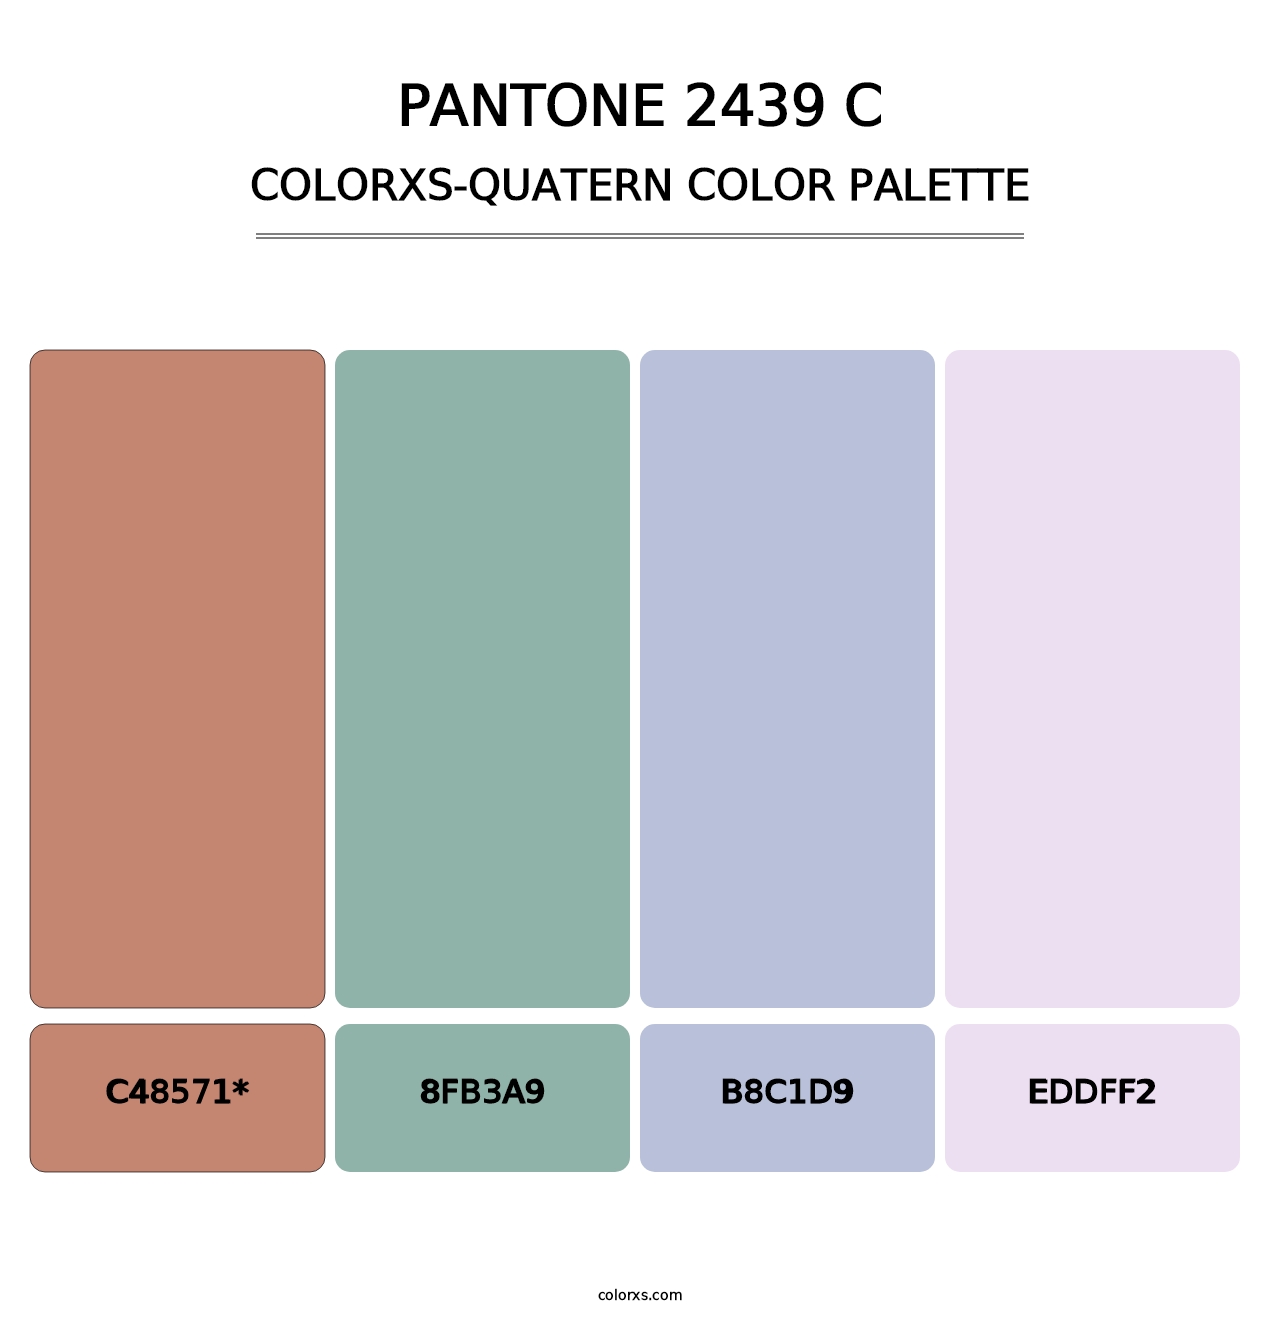 PANTONE 2439 C - Colorxs Quatern Palette